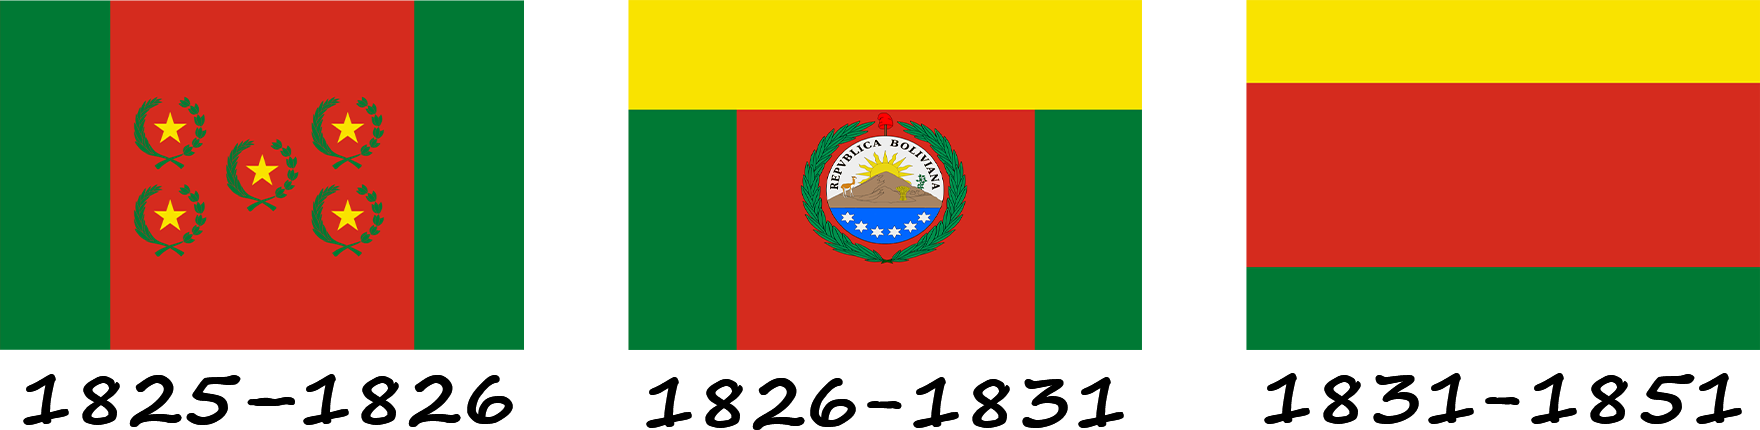 Histoire du drapeau bolivien